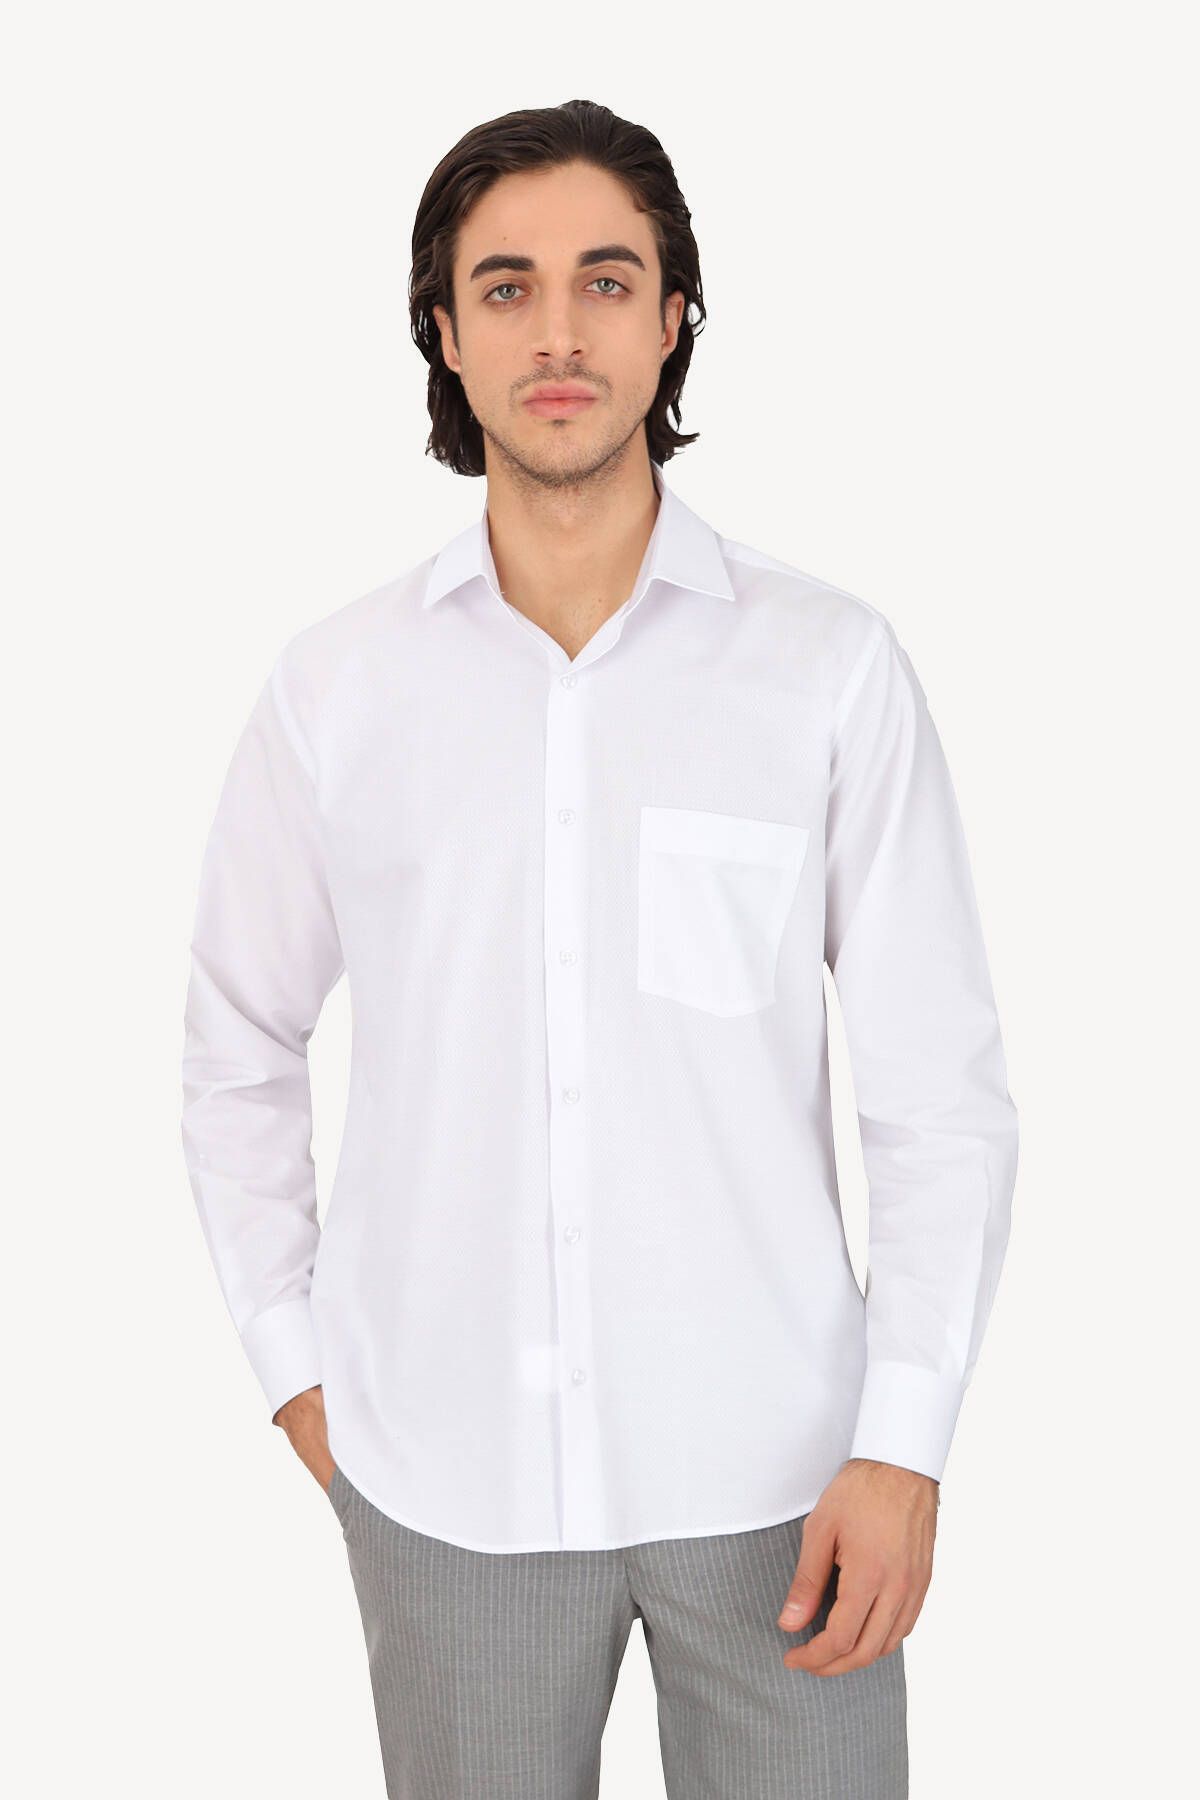 YSF Erkek Beyaz Uzun Kol Klasik Desenli Gömlek